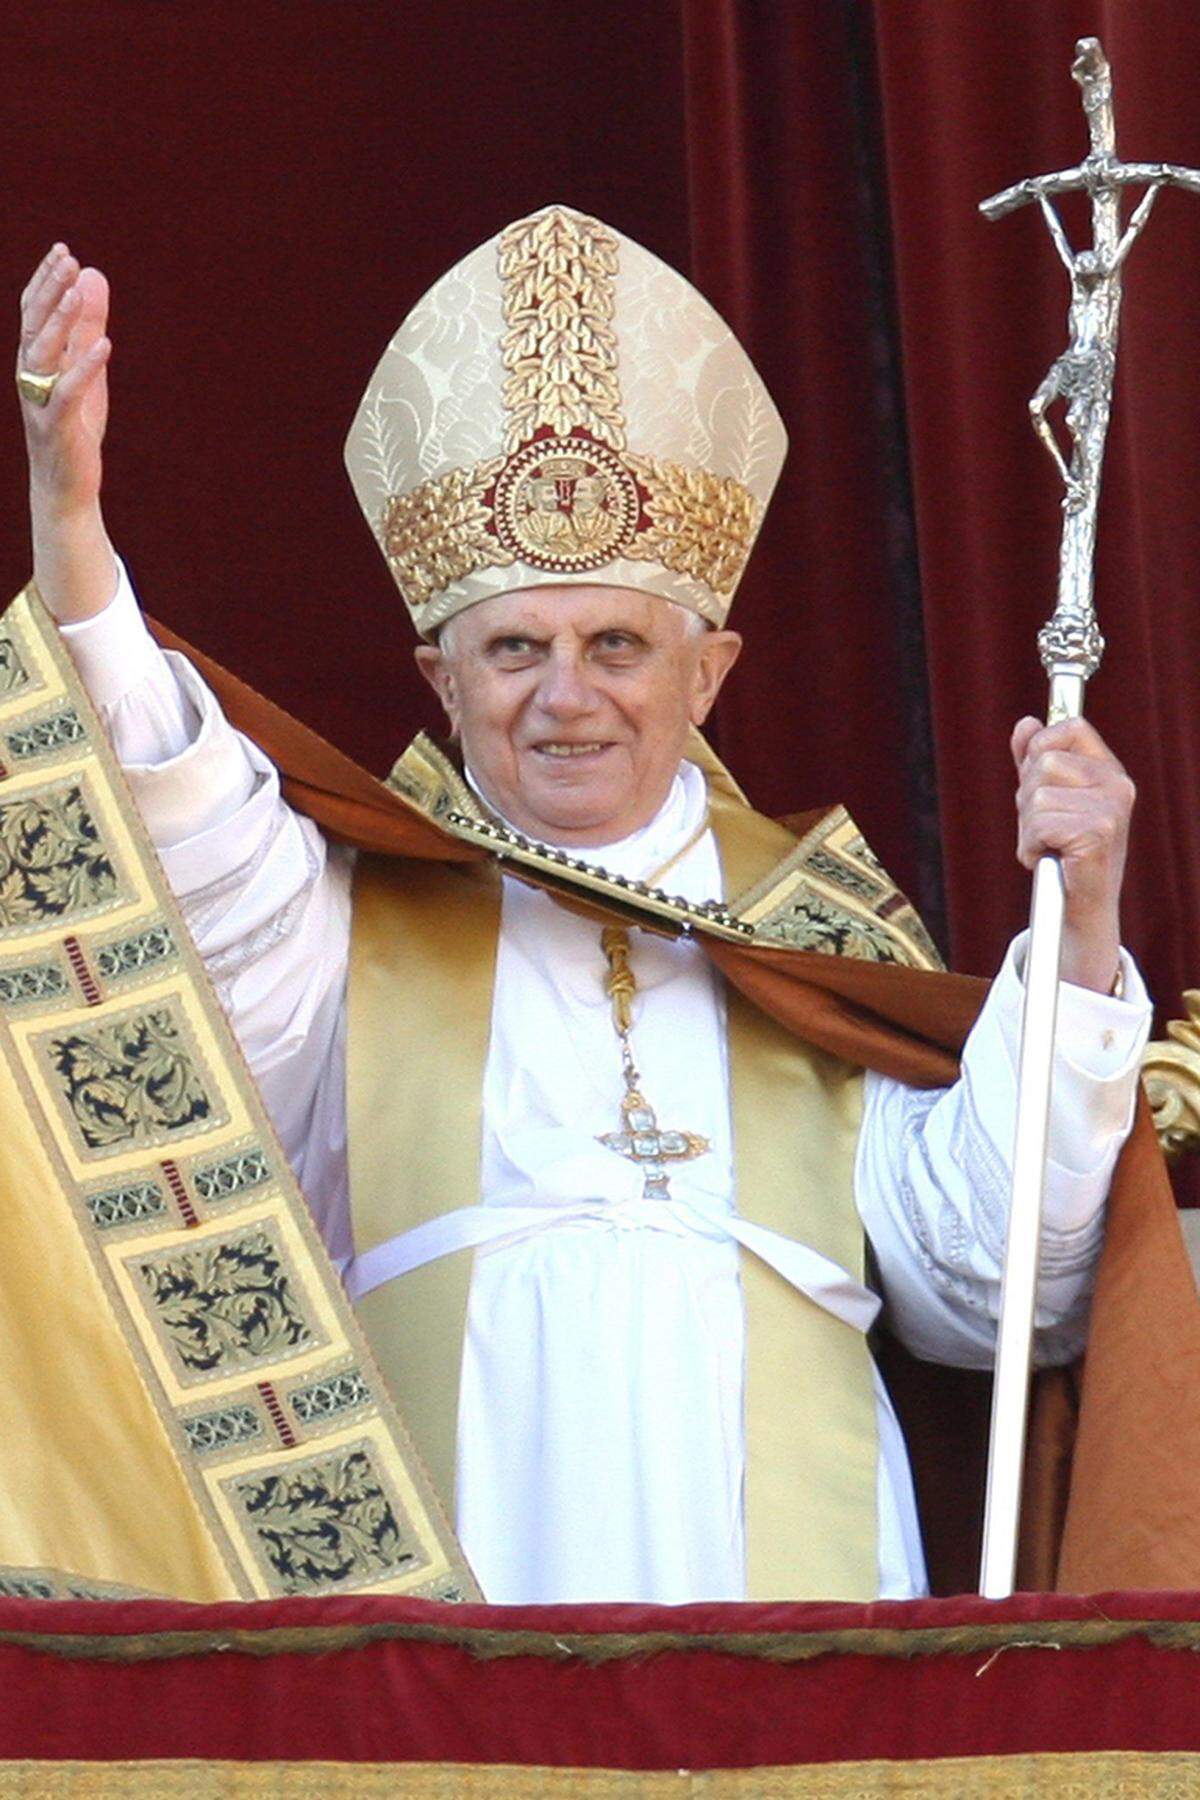 25. Dezember 2006: Ein Jahr später segnet der Papst am Weihnachtstag die Menge am Petersplatz.